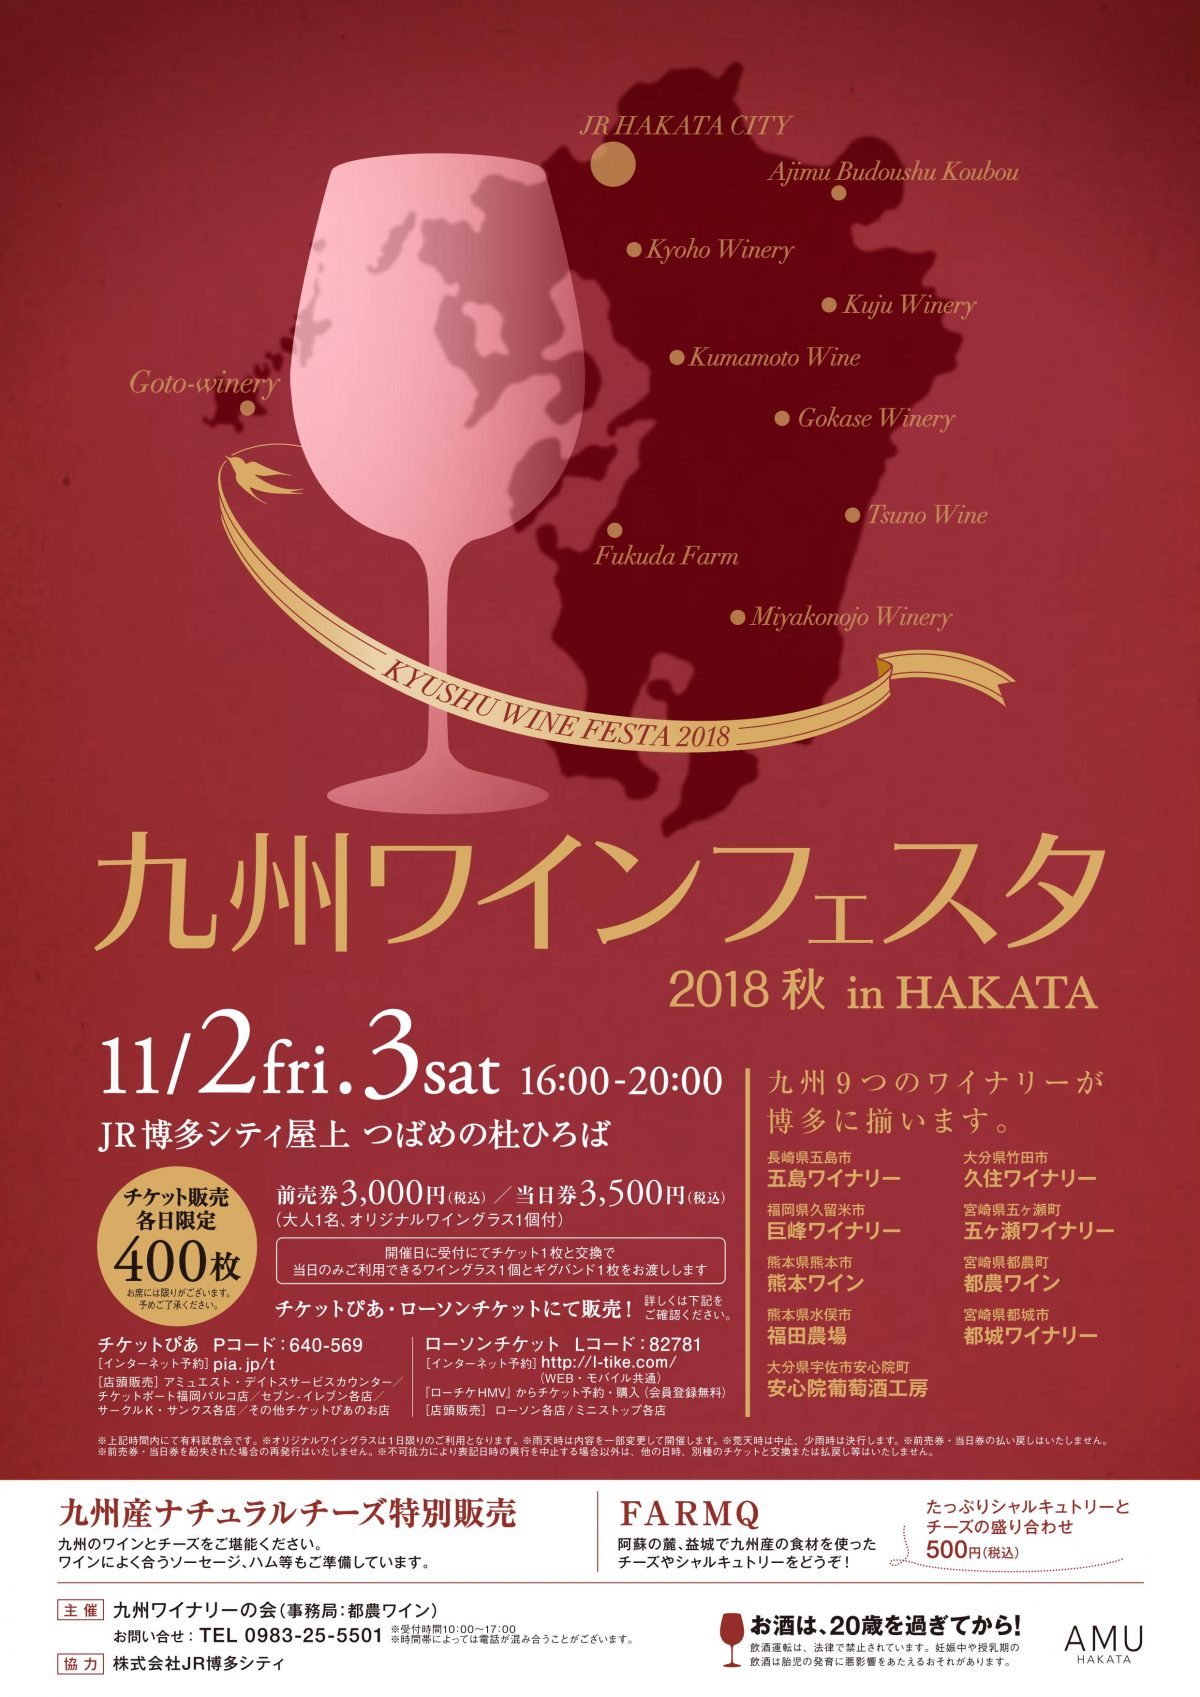 九州ワインフェスタ2018 秋 in HAKATA